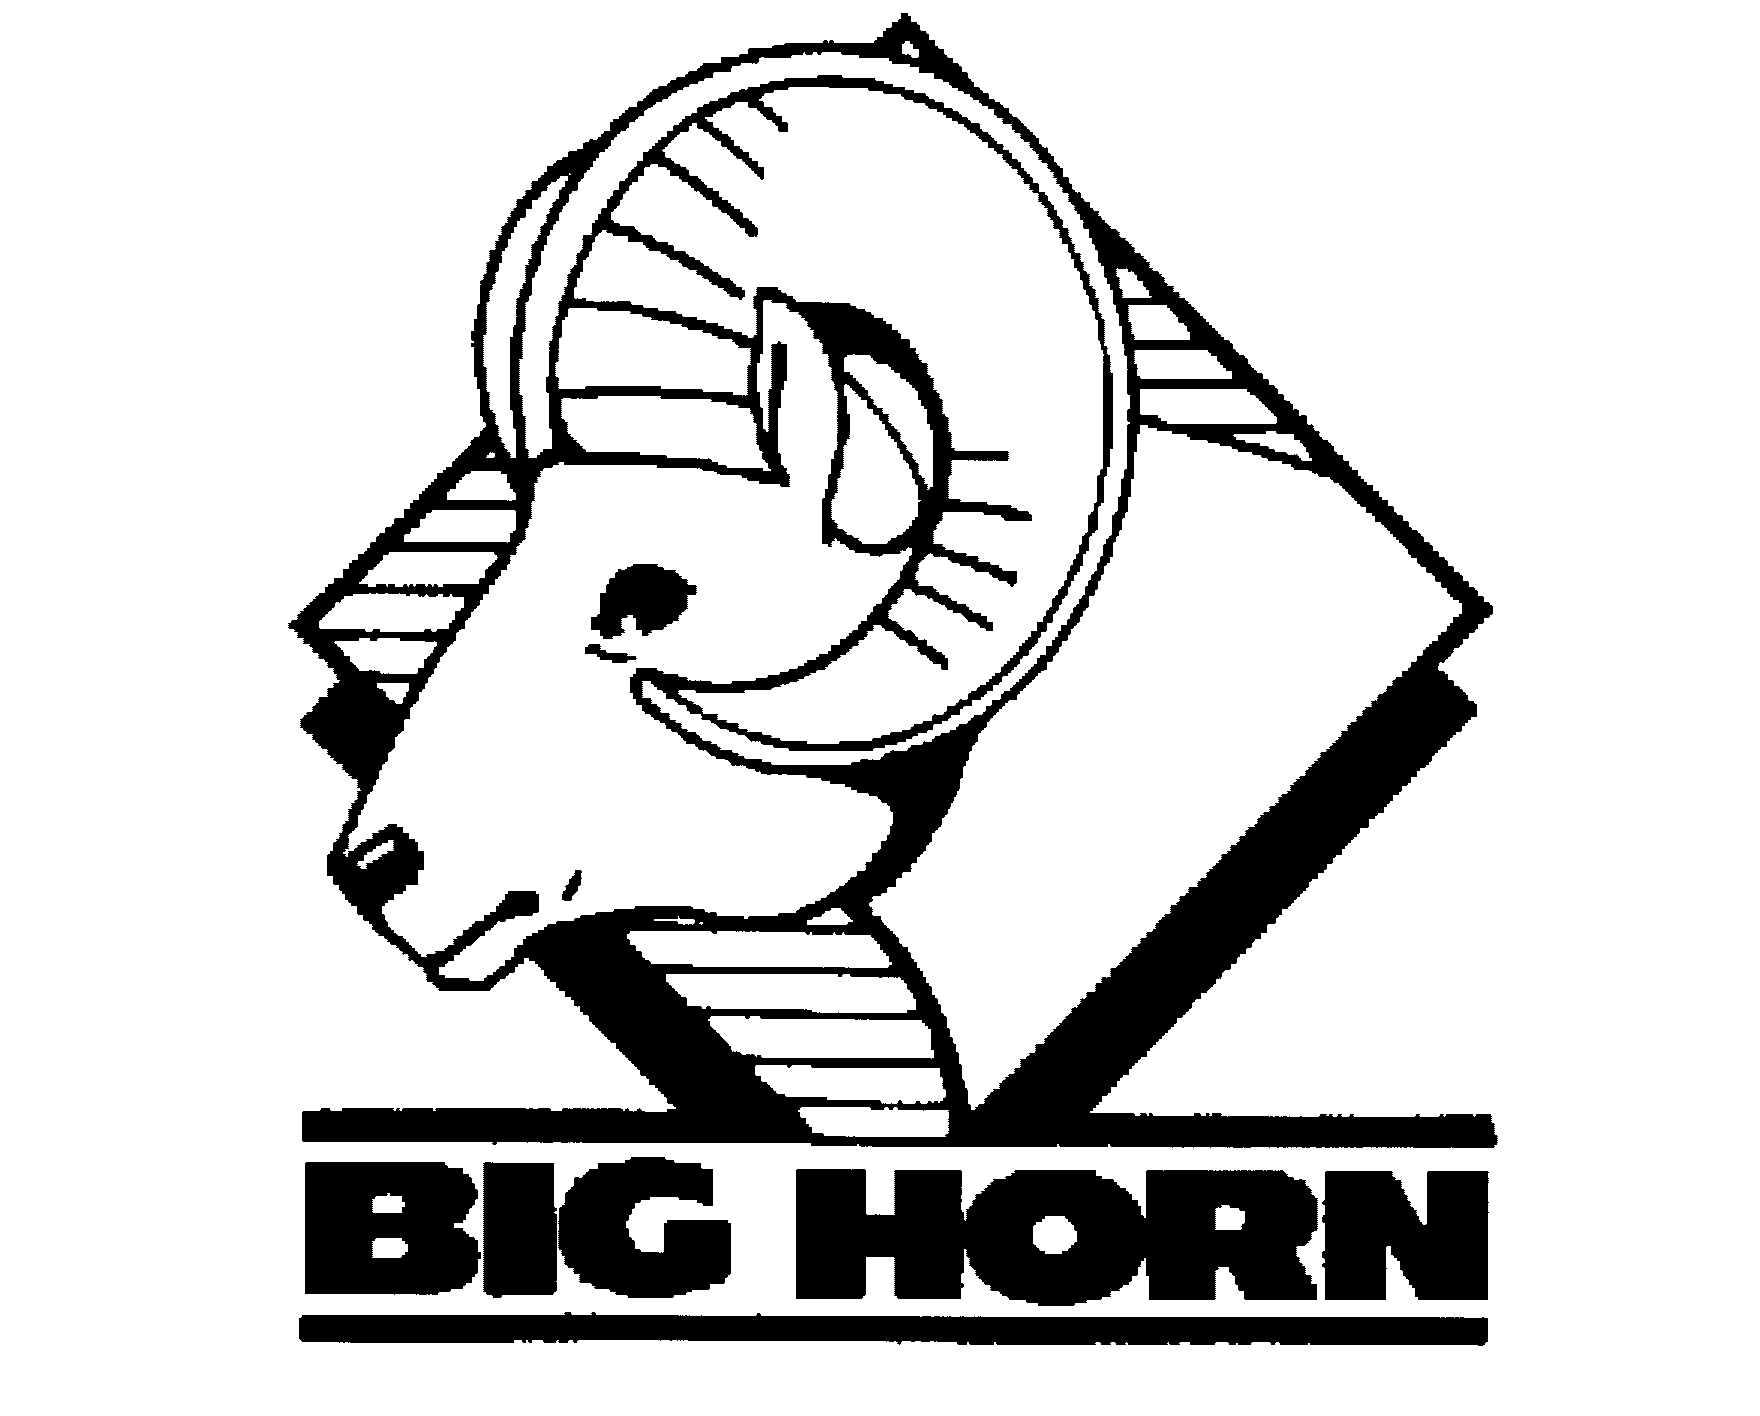 BIG HORN